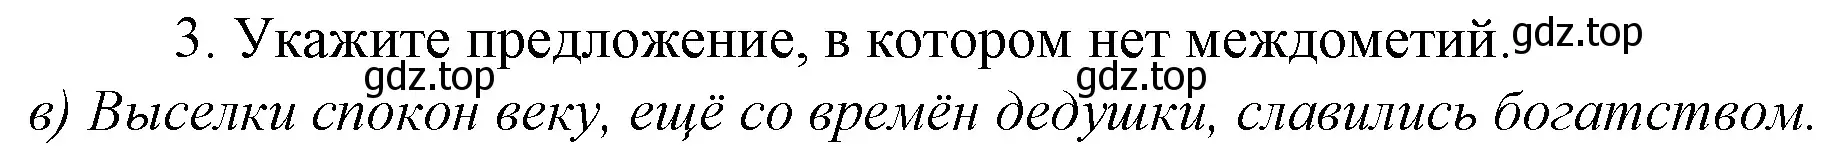 Решение 4. номер 3 (страница 338) гдз по русскому языку 10-11 класс Гольцова, Шамшин, учебник 1 часть